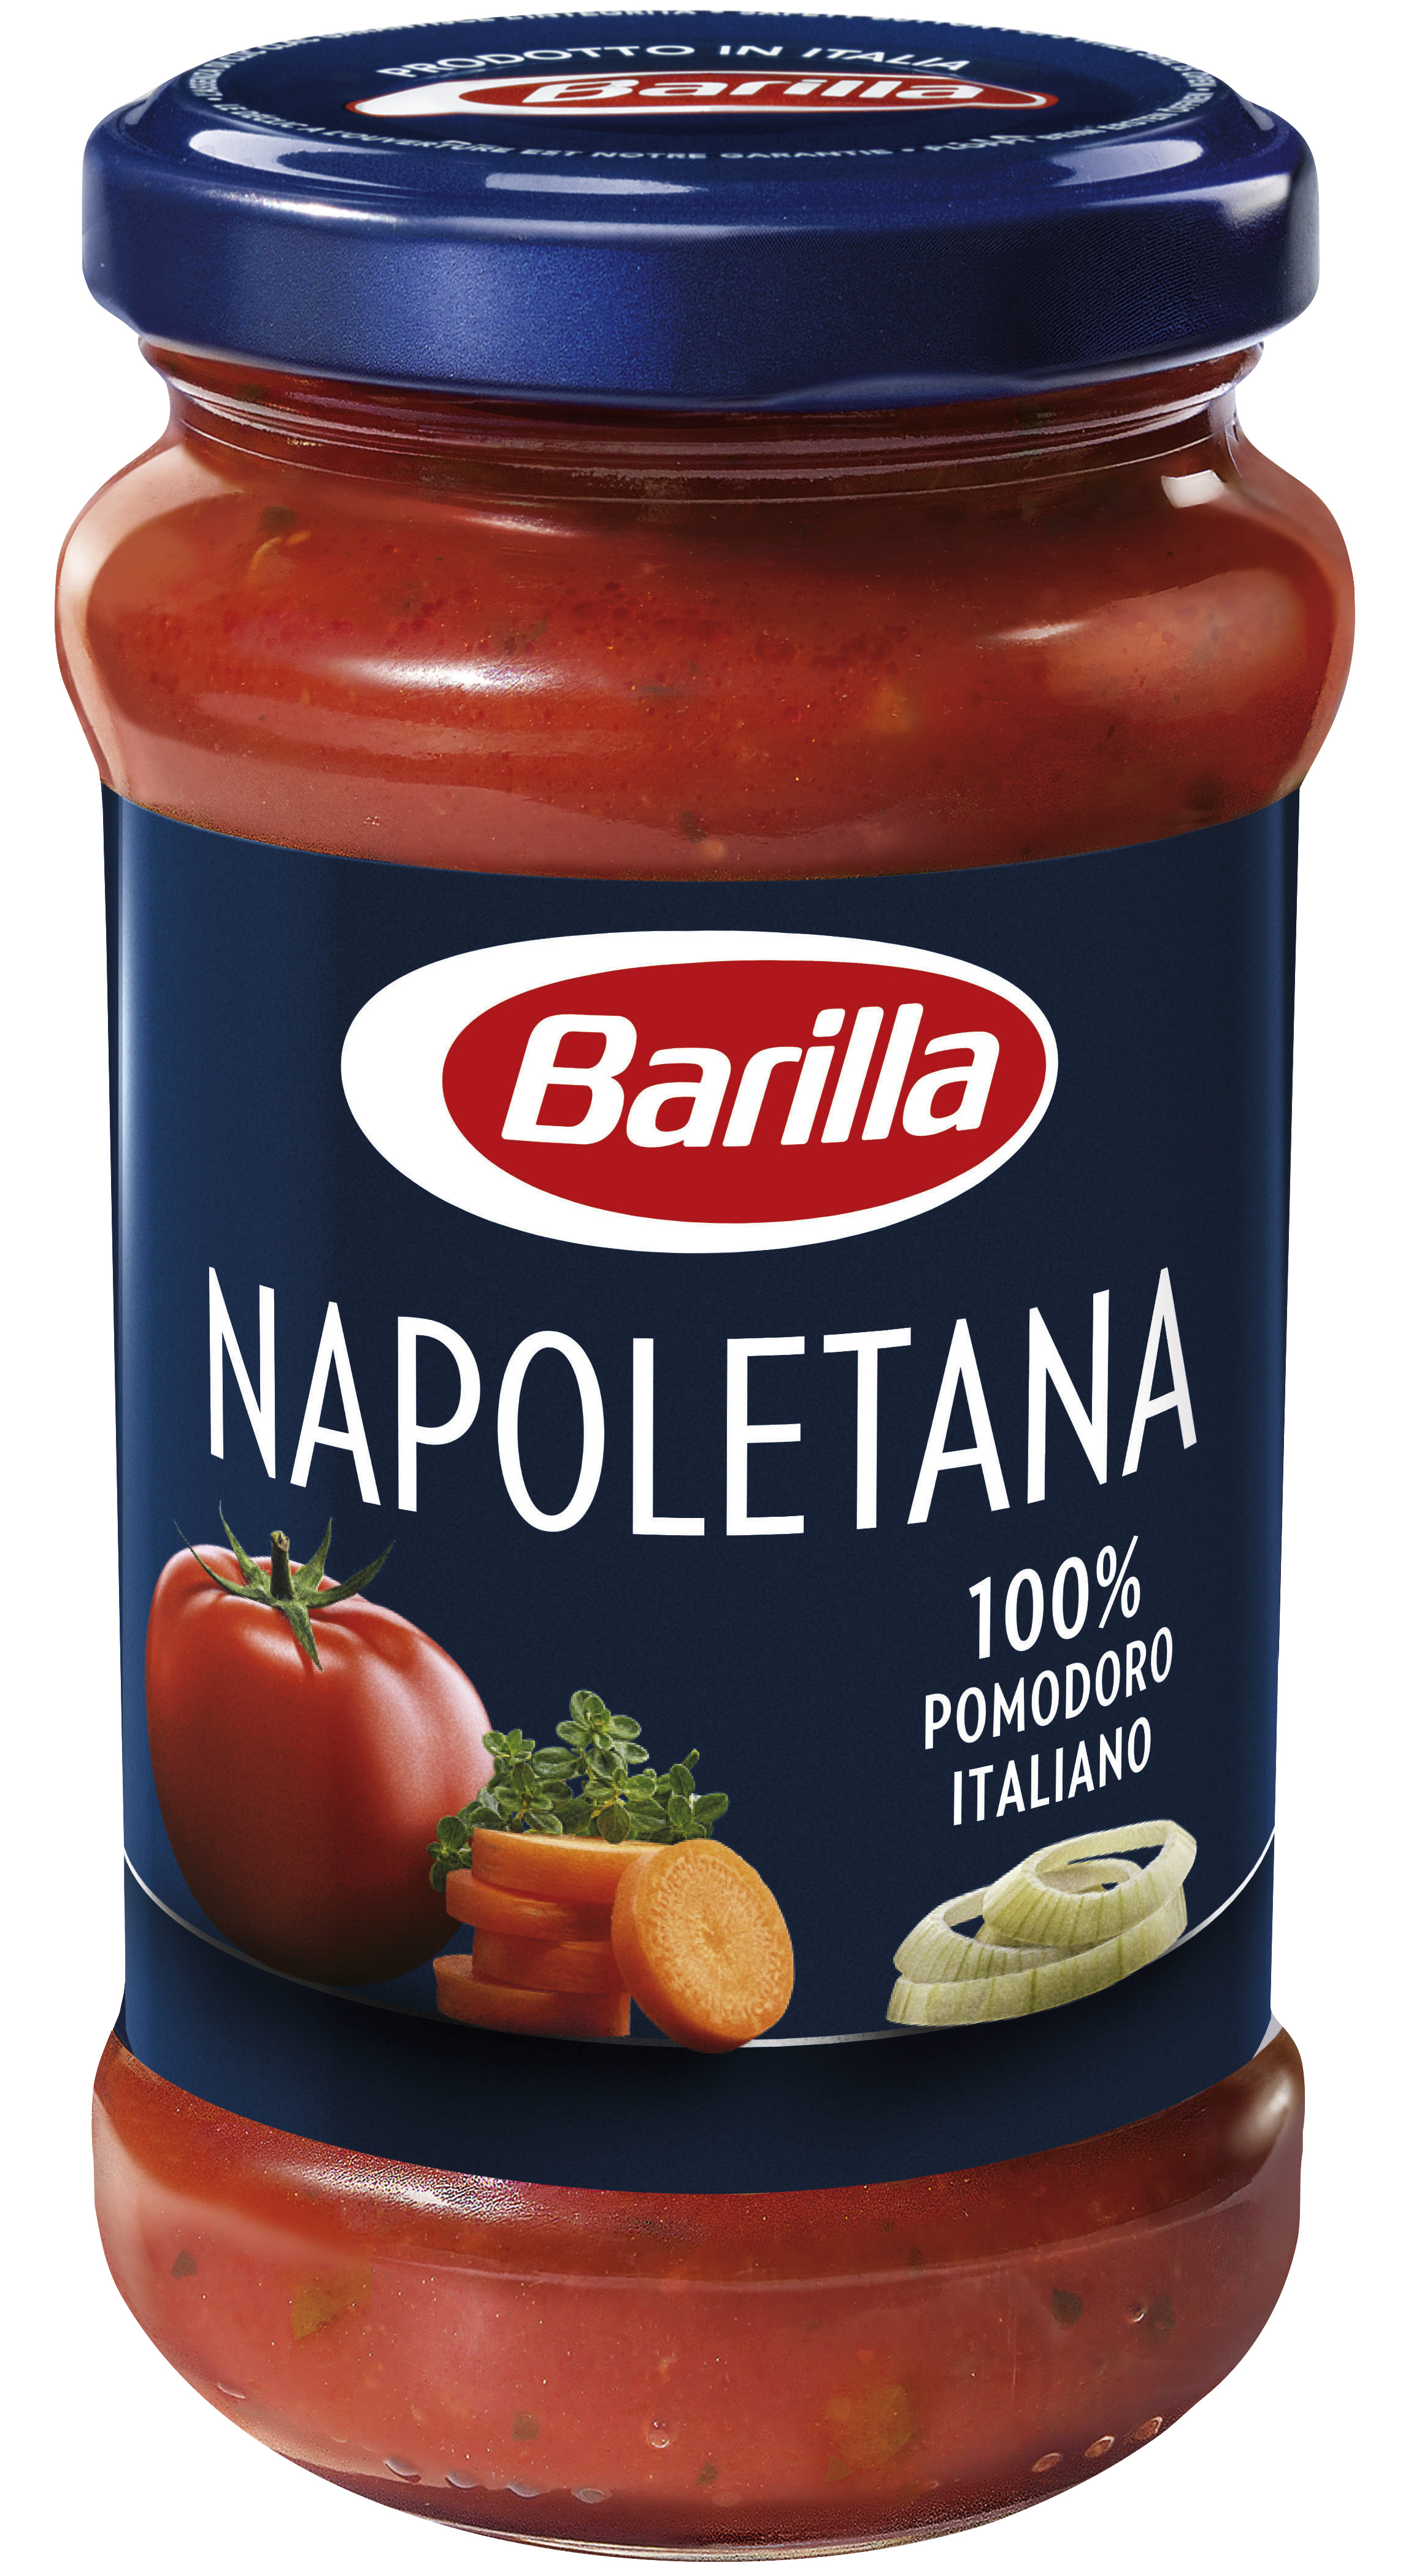 Barilla Napoletana - Tomatensauce mit Kräutern 200g